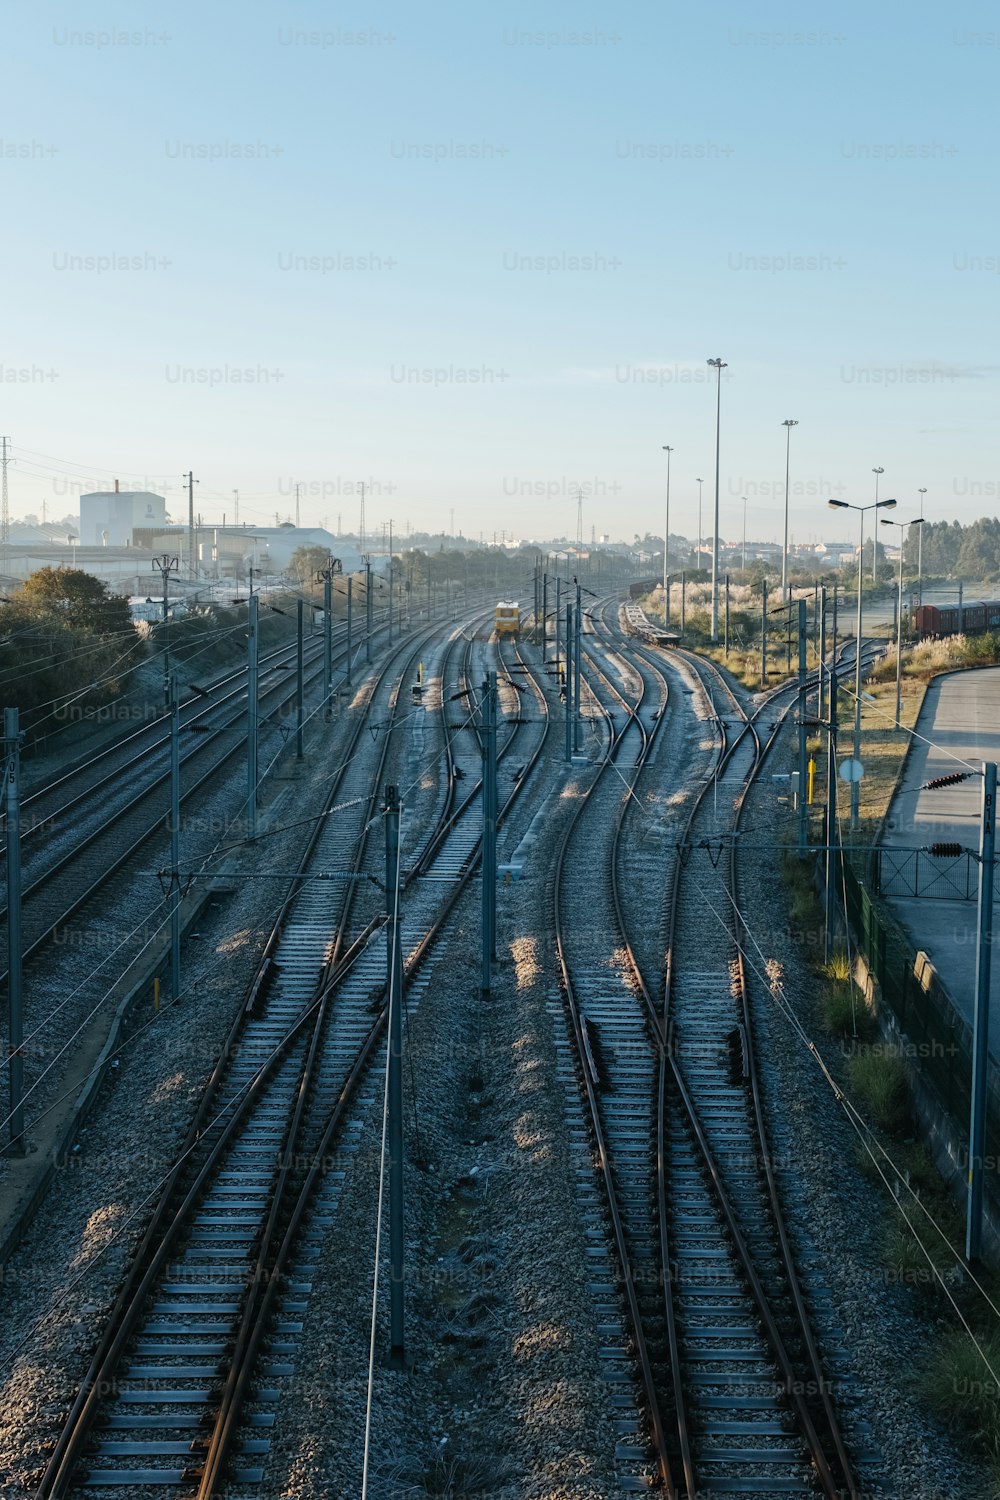 Blick auf einen Rangierbahnhof mit vielen Gleisen